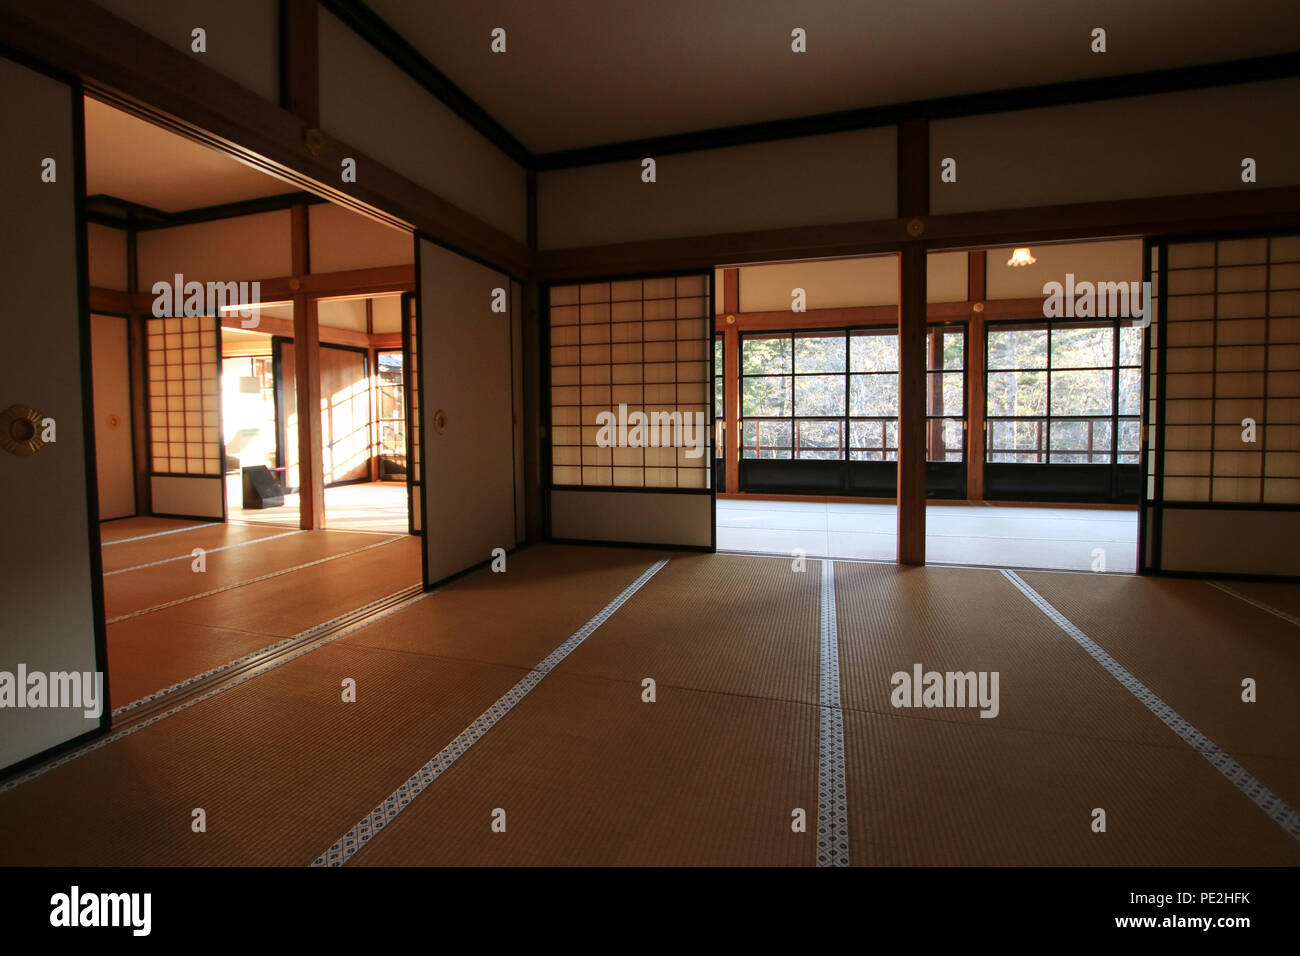 Japanese style rooms in the Tamozawa Imperial Villa in Nikko, Japan. Stock Photo